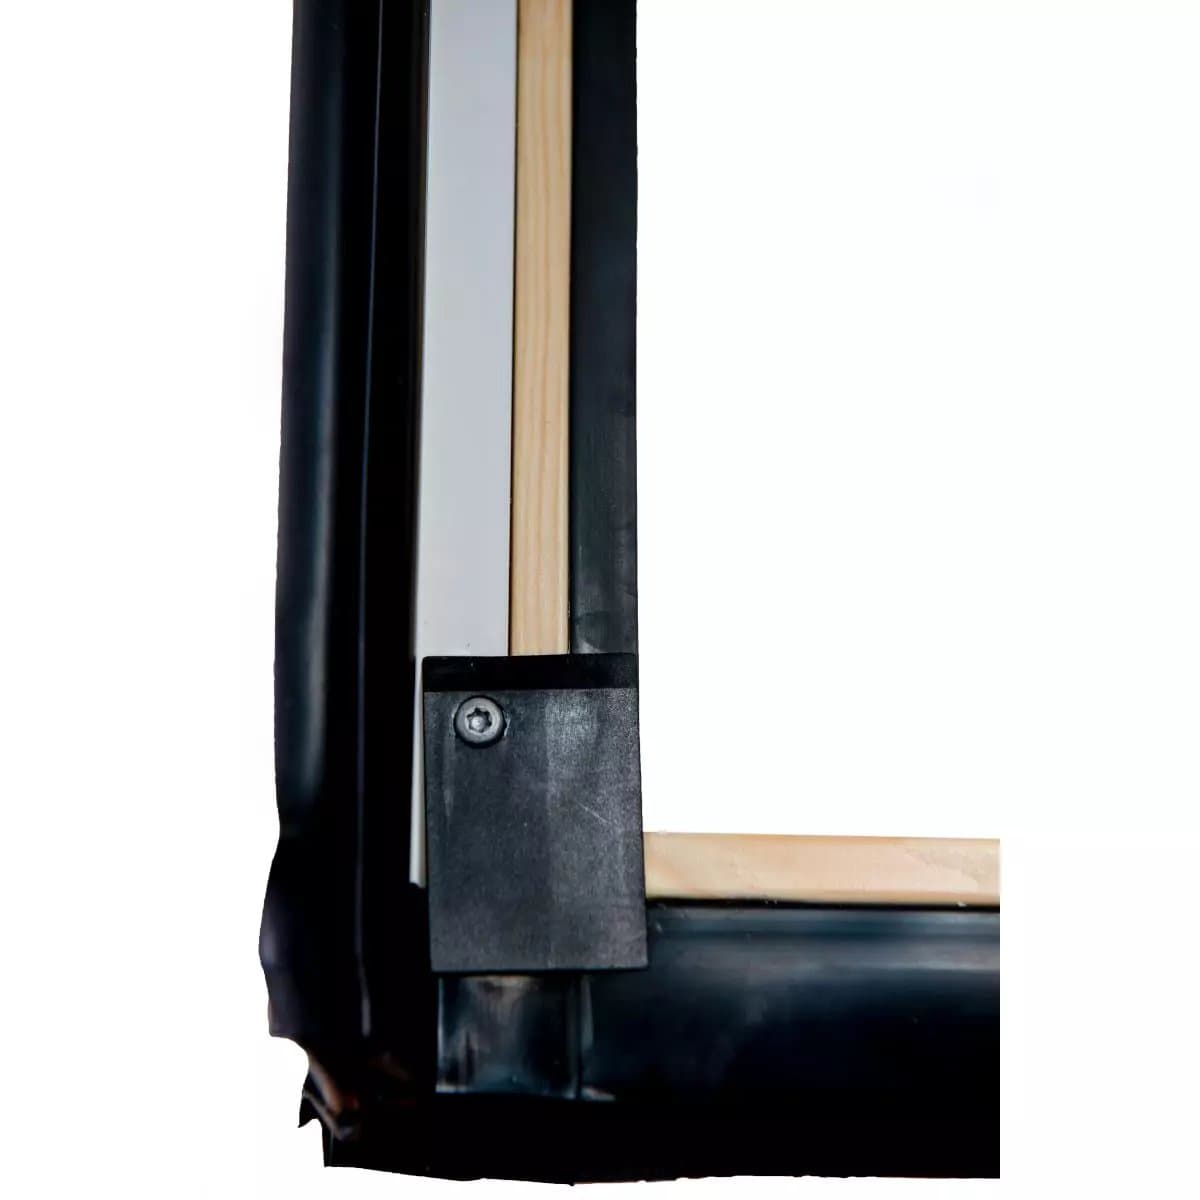 Окно мансардное деревянное c электроприводом Designo R45 H2E. 1 камерное. Электроуправление. ThermoBlock WD.